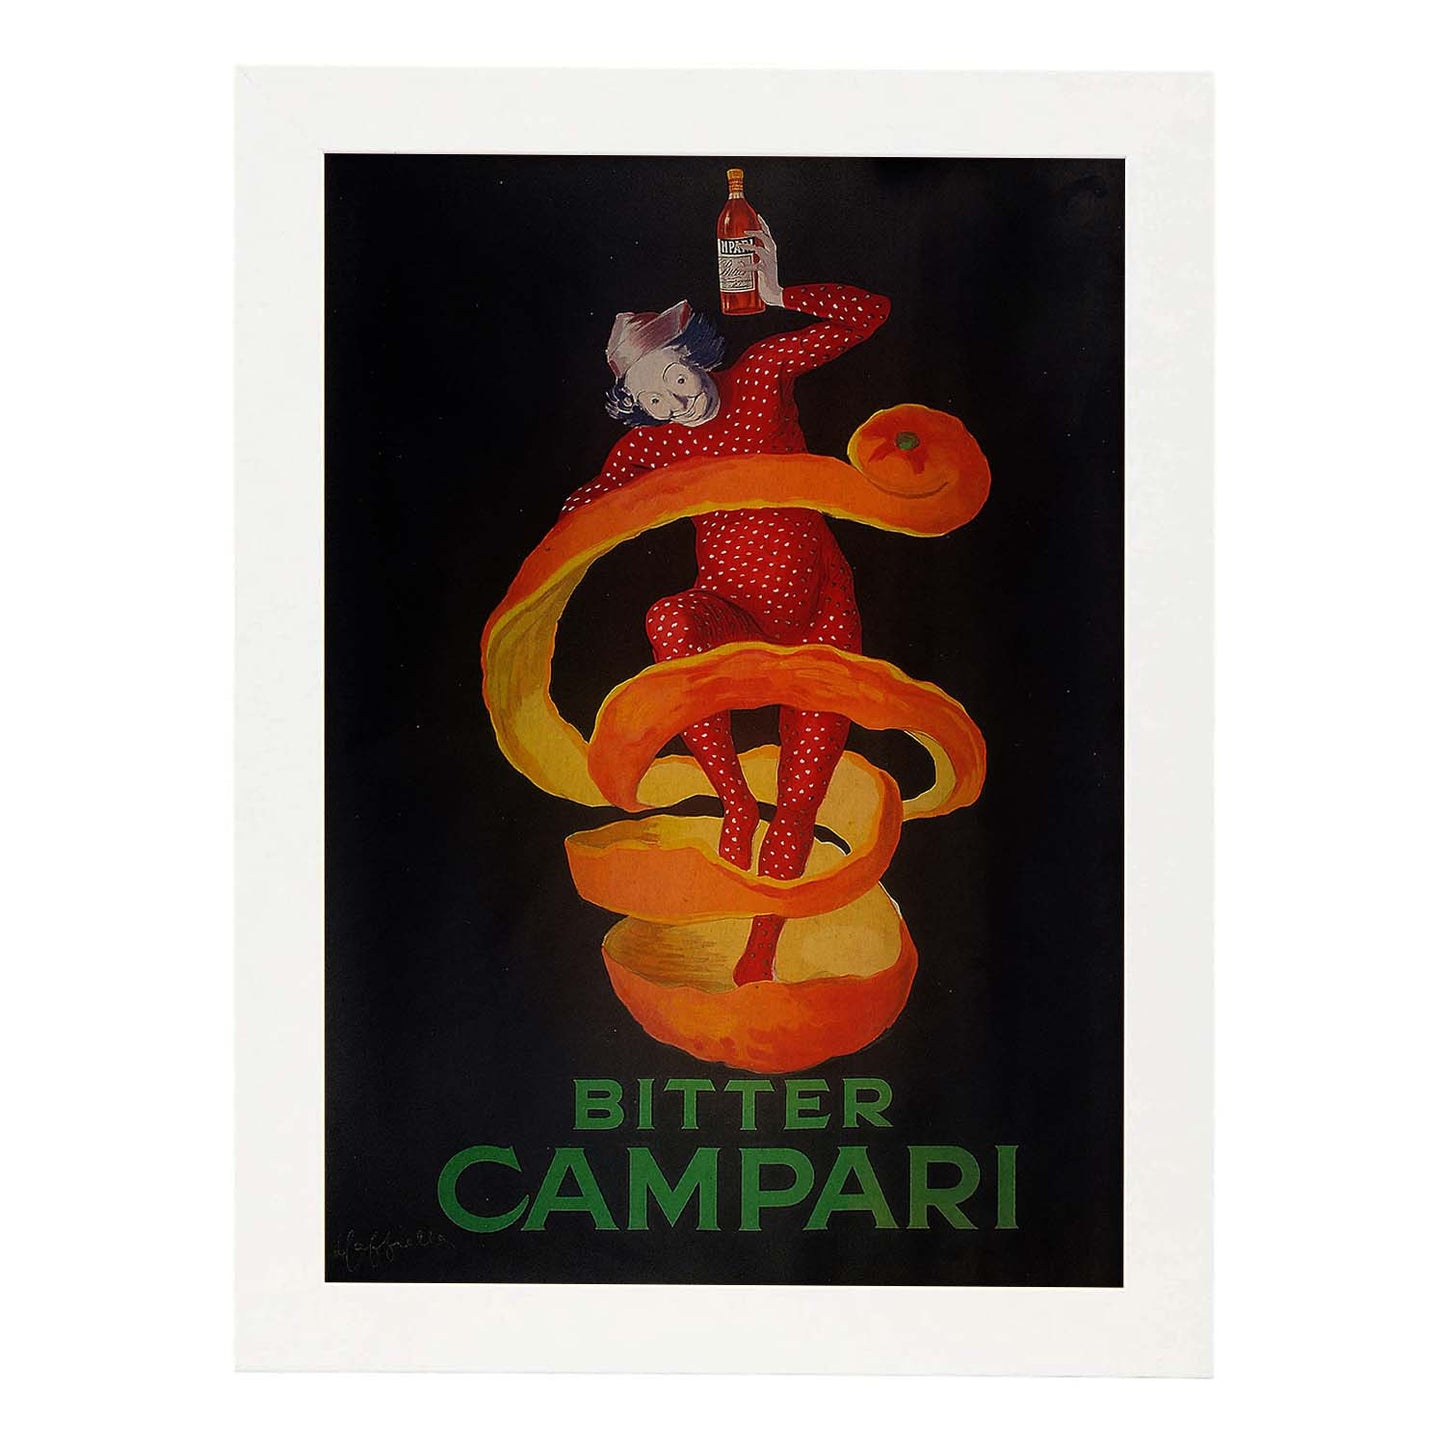 Poster vintage. Anuncio vintage italiano de Campari de 1921.-Artwork-Nacnic-A4-Marco Blanco-Nacnic Estudio SL